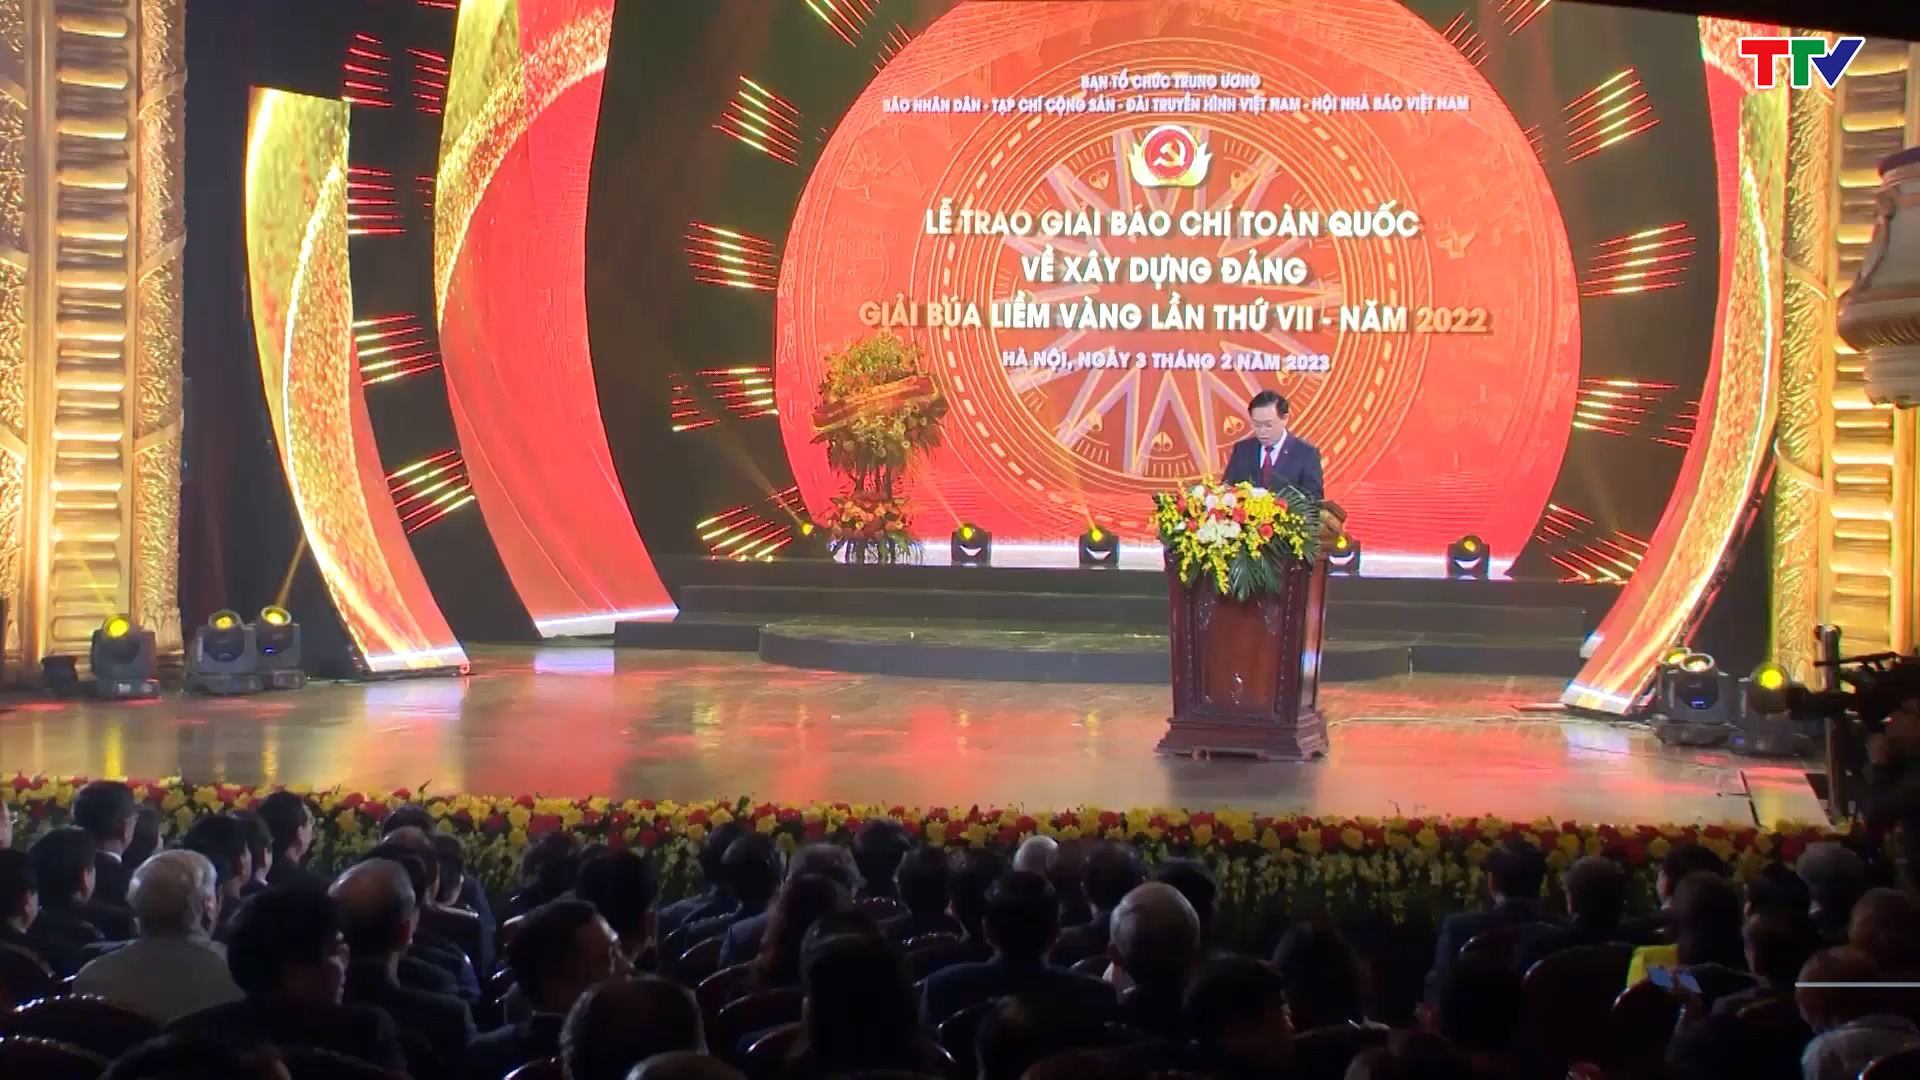 Thanh Hóa đạt 3 giải thưởng báo chí Búa liềm vàng năm 2022 - Ảnh 2.